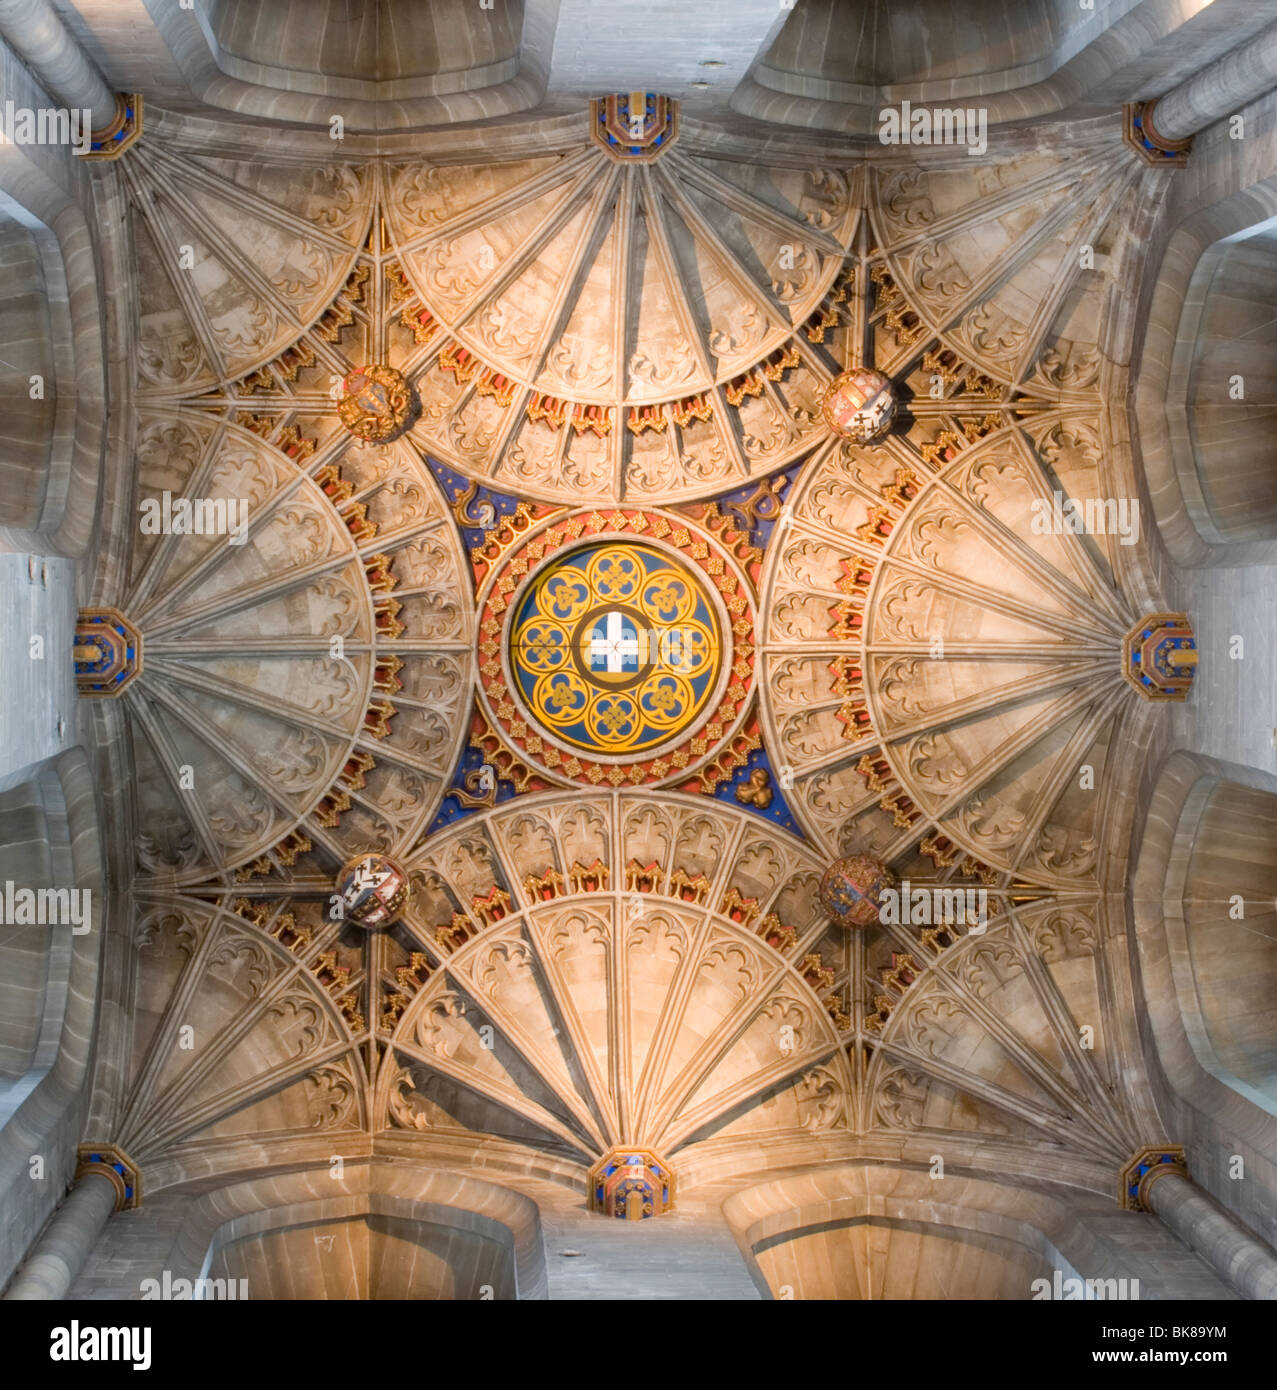 Dach des Glockenturms Harry in Canterbury Kathedrale, Kent, UK. Stockfoto